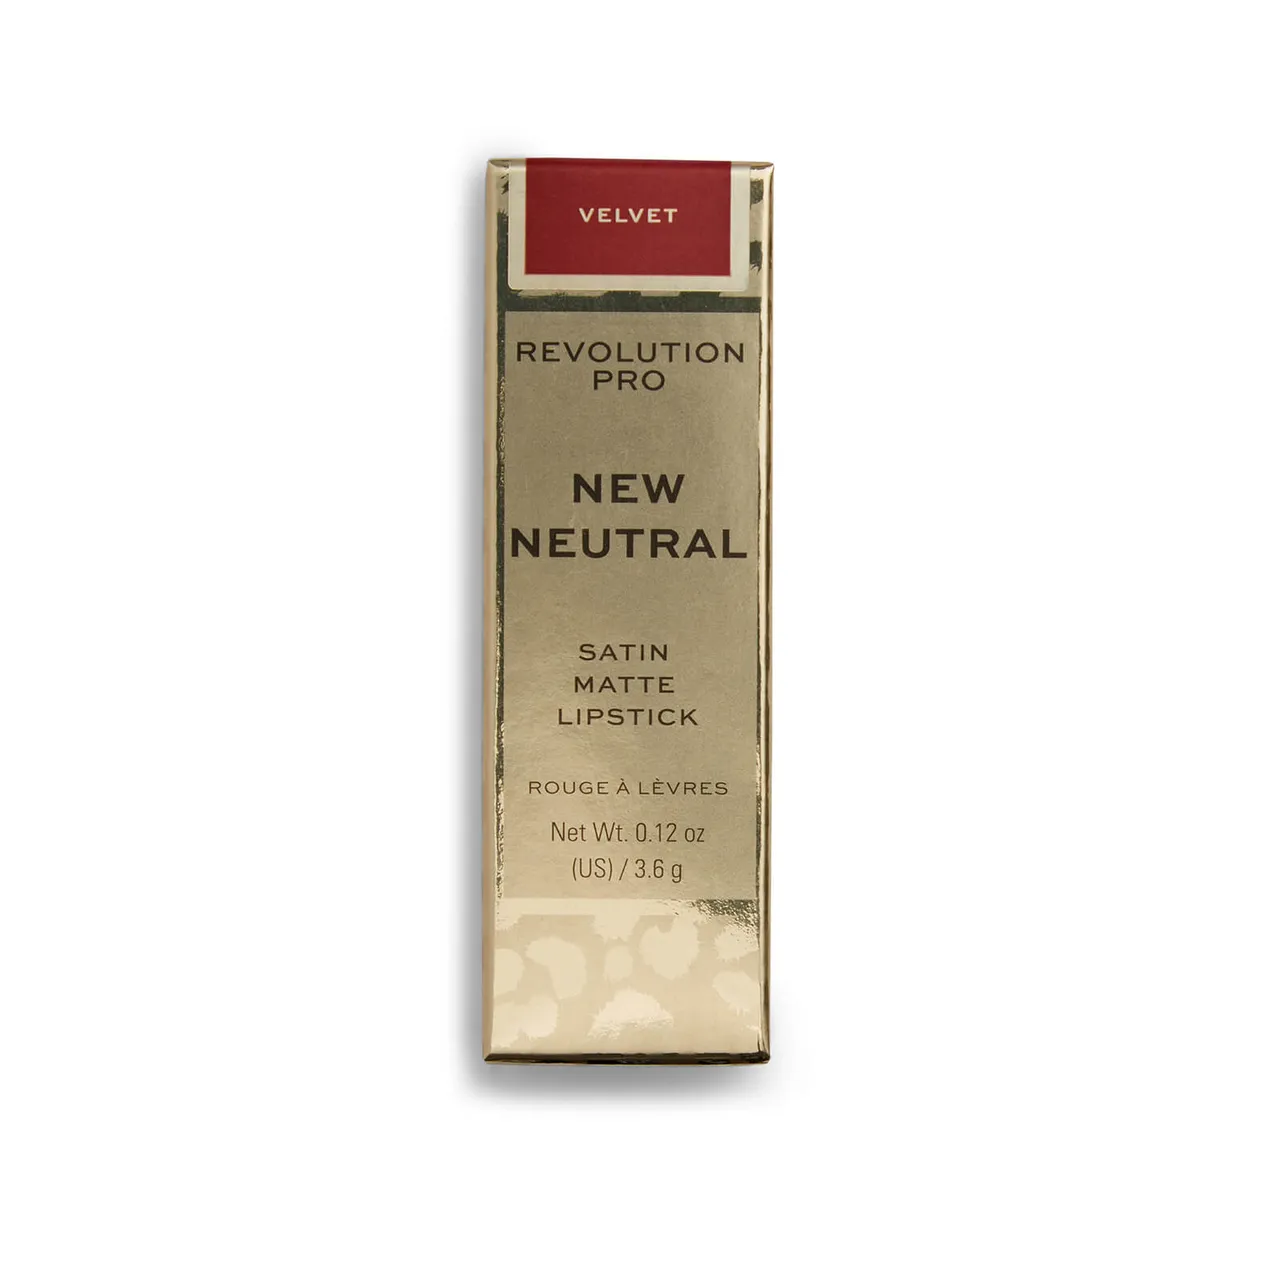 Revolution Pro New Neutral Satin Matte Lipstick 3.6g (Various Shades) - Velvet